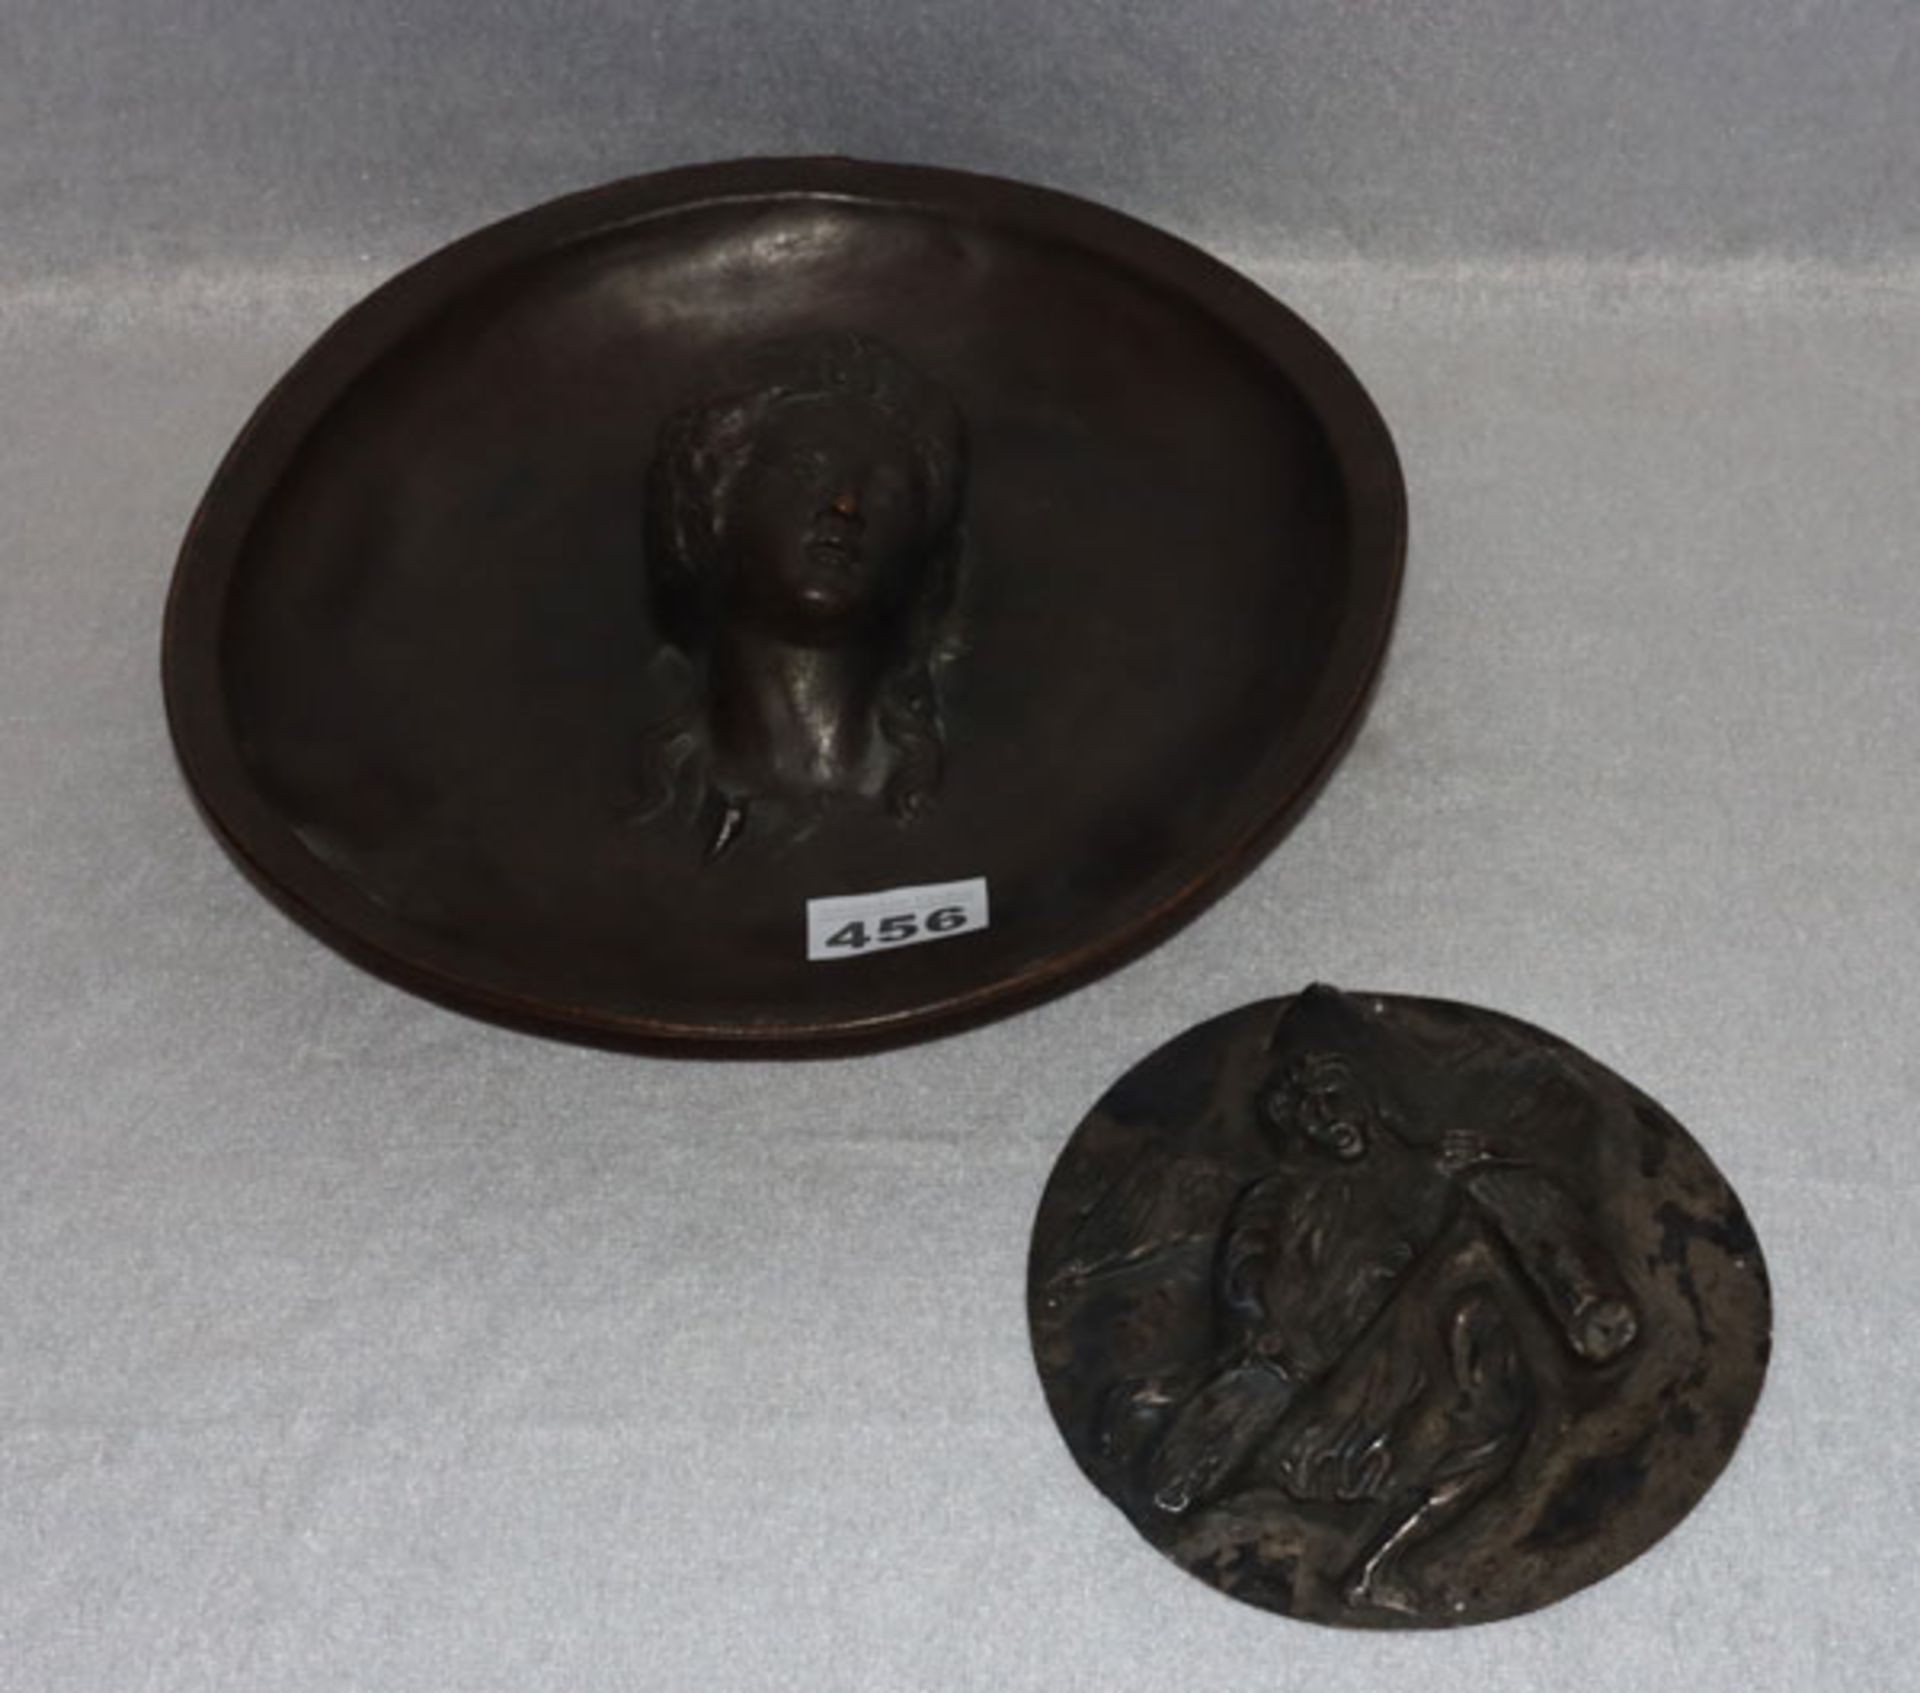 Kupferschale mit reliefiertem Kopf, Opferschale ?, D 27 cm, verbeult, und Metallrelief 'Engel mit